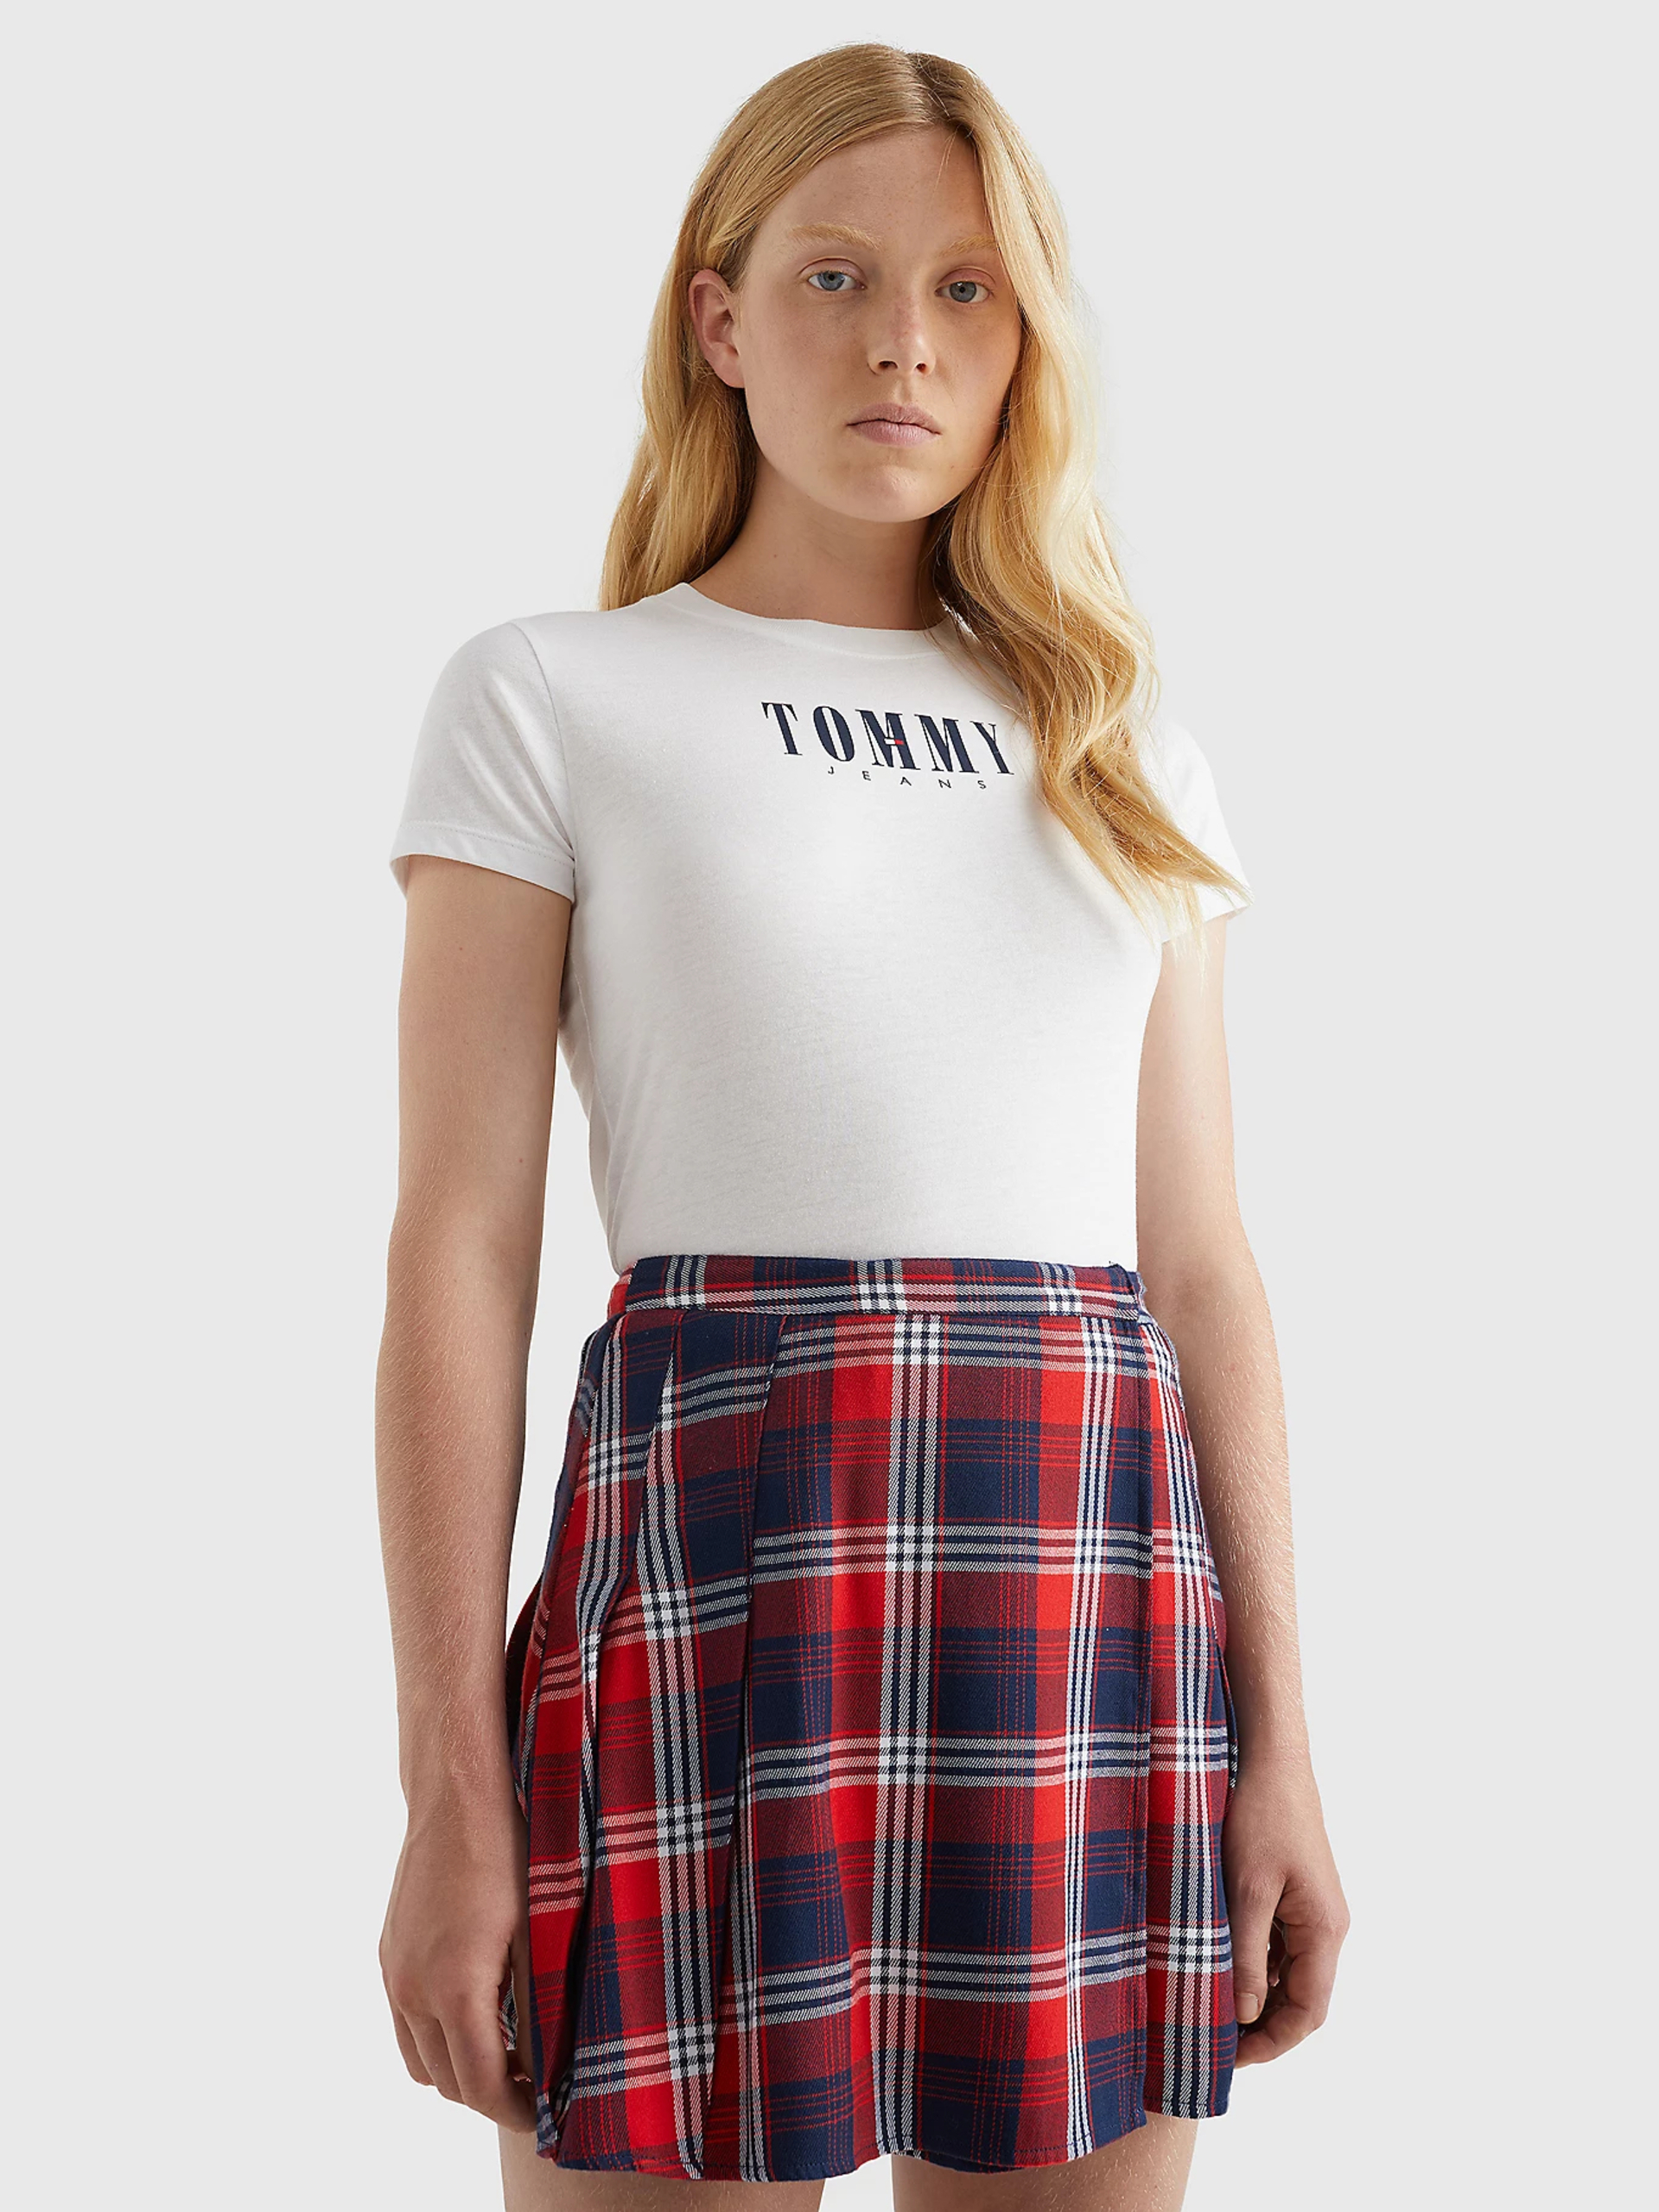 Tommy Jeans dámské bílé tričko - XL (YBR)